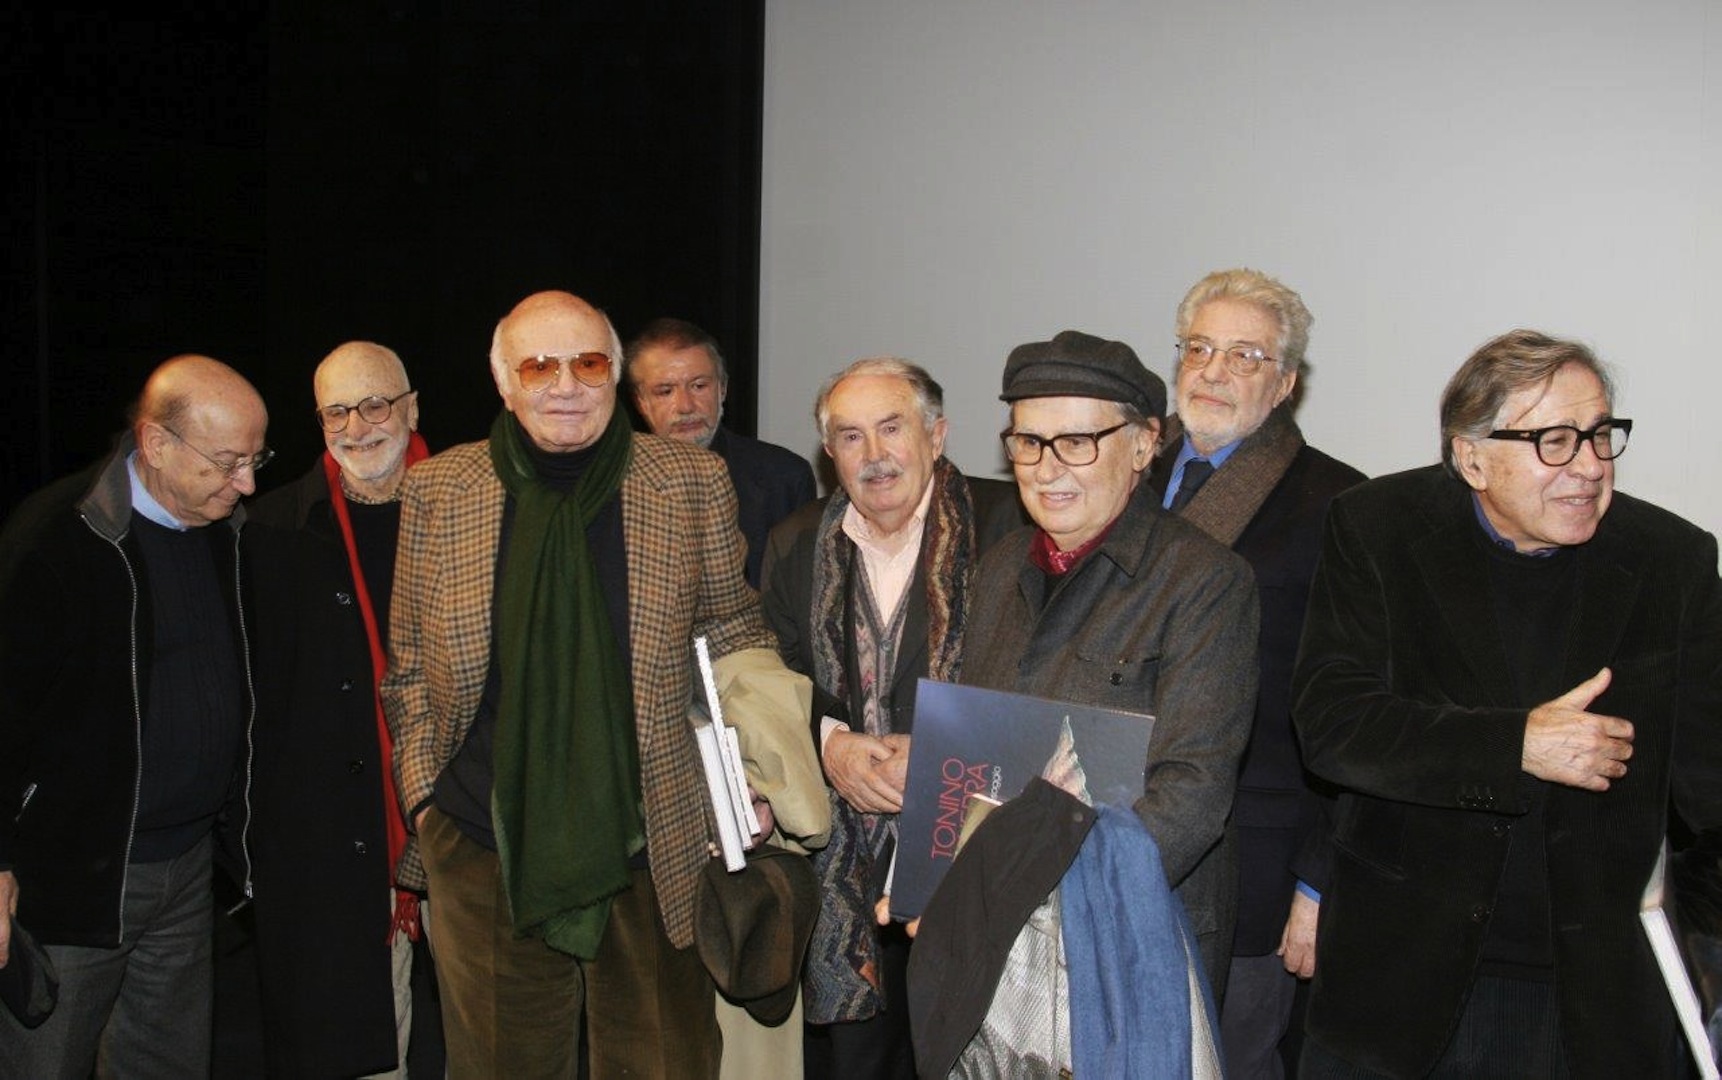 with Theo Angelopoulos, Mario Monicelli, Francesco Rosi, Tonino Guerra, Vittorio Taviani, Ettore Scola, Paolo Taviani